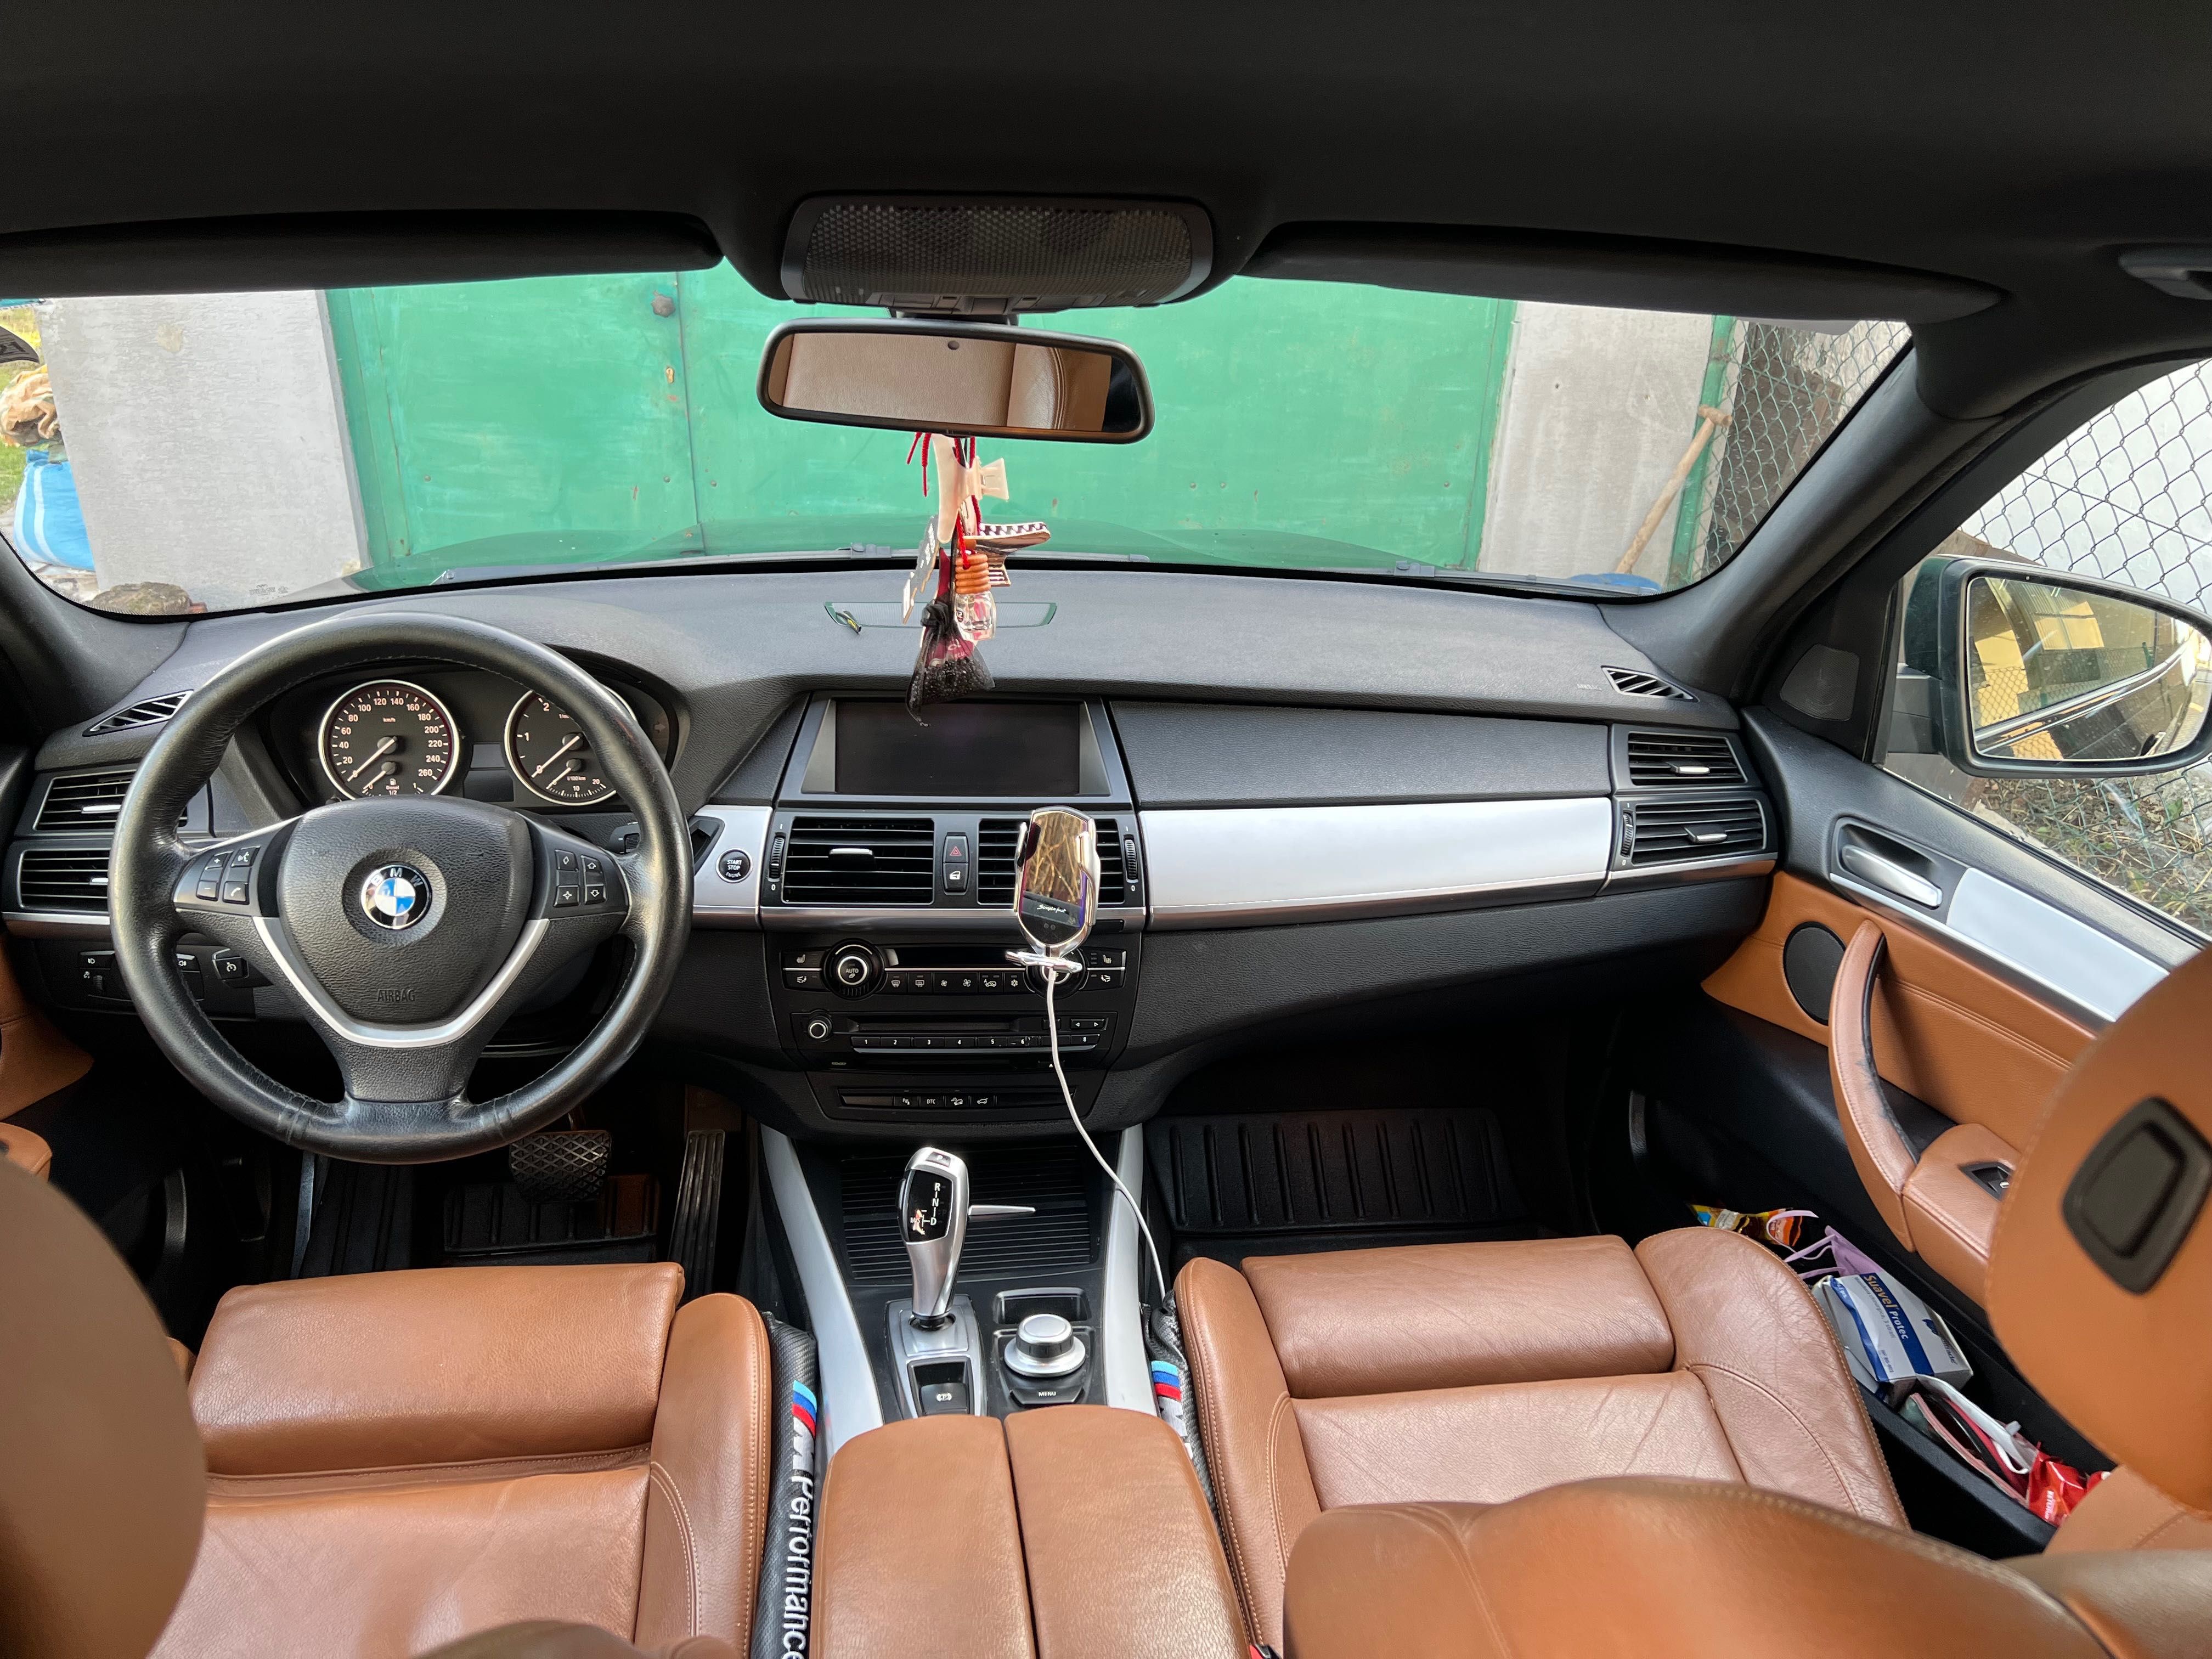 BMW X5 3.0 diesel 235ps